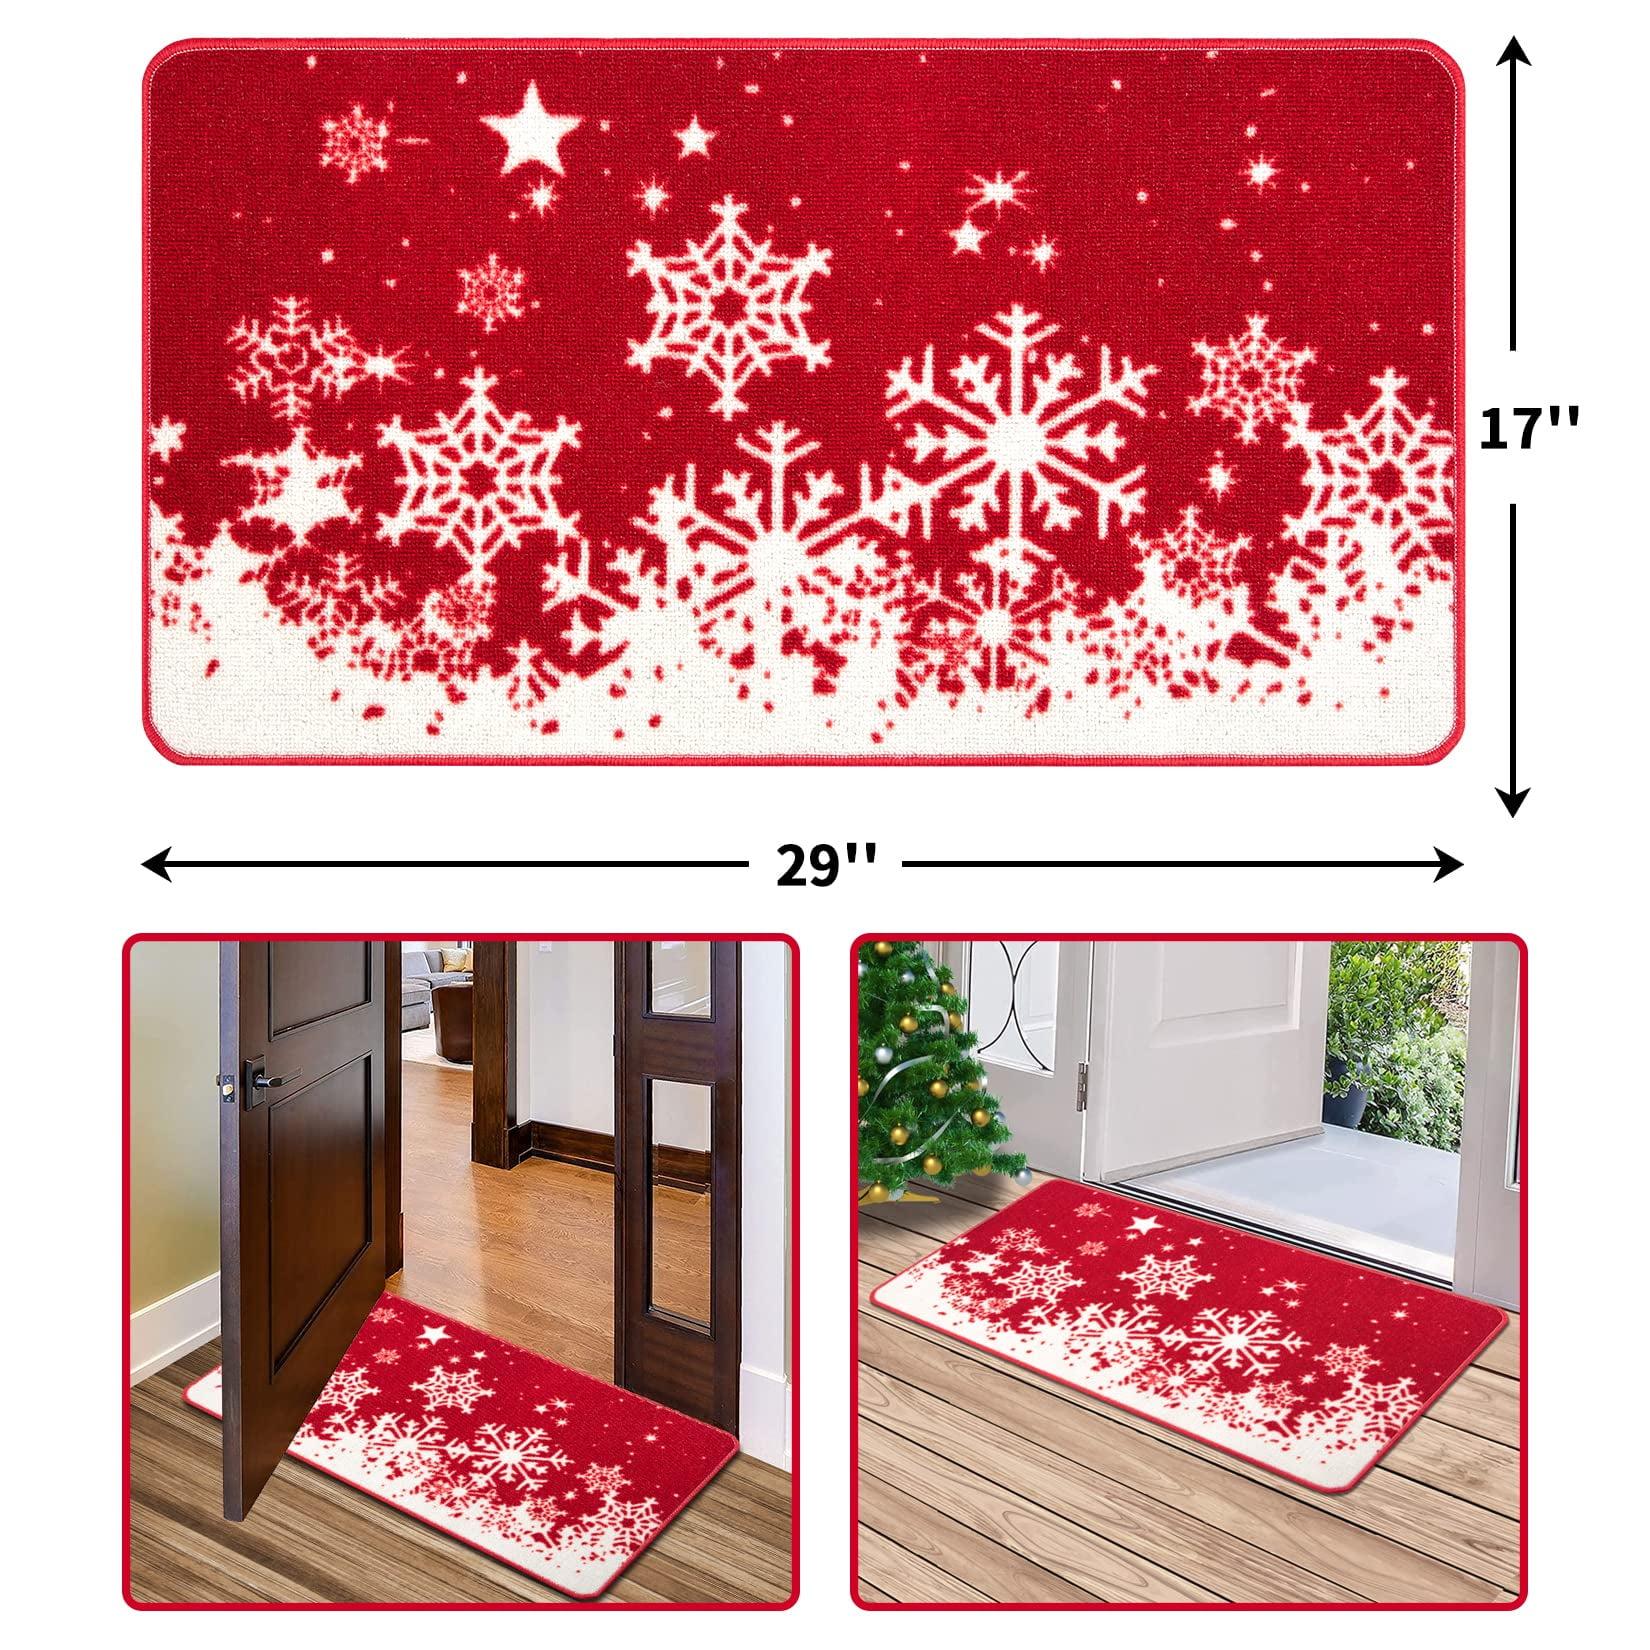 Snow Place Like Home Door Mat, Christmas Doormat